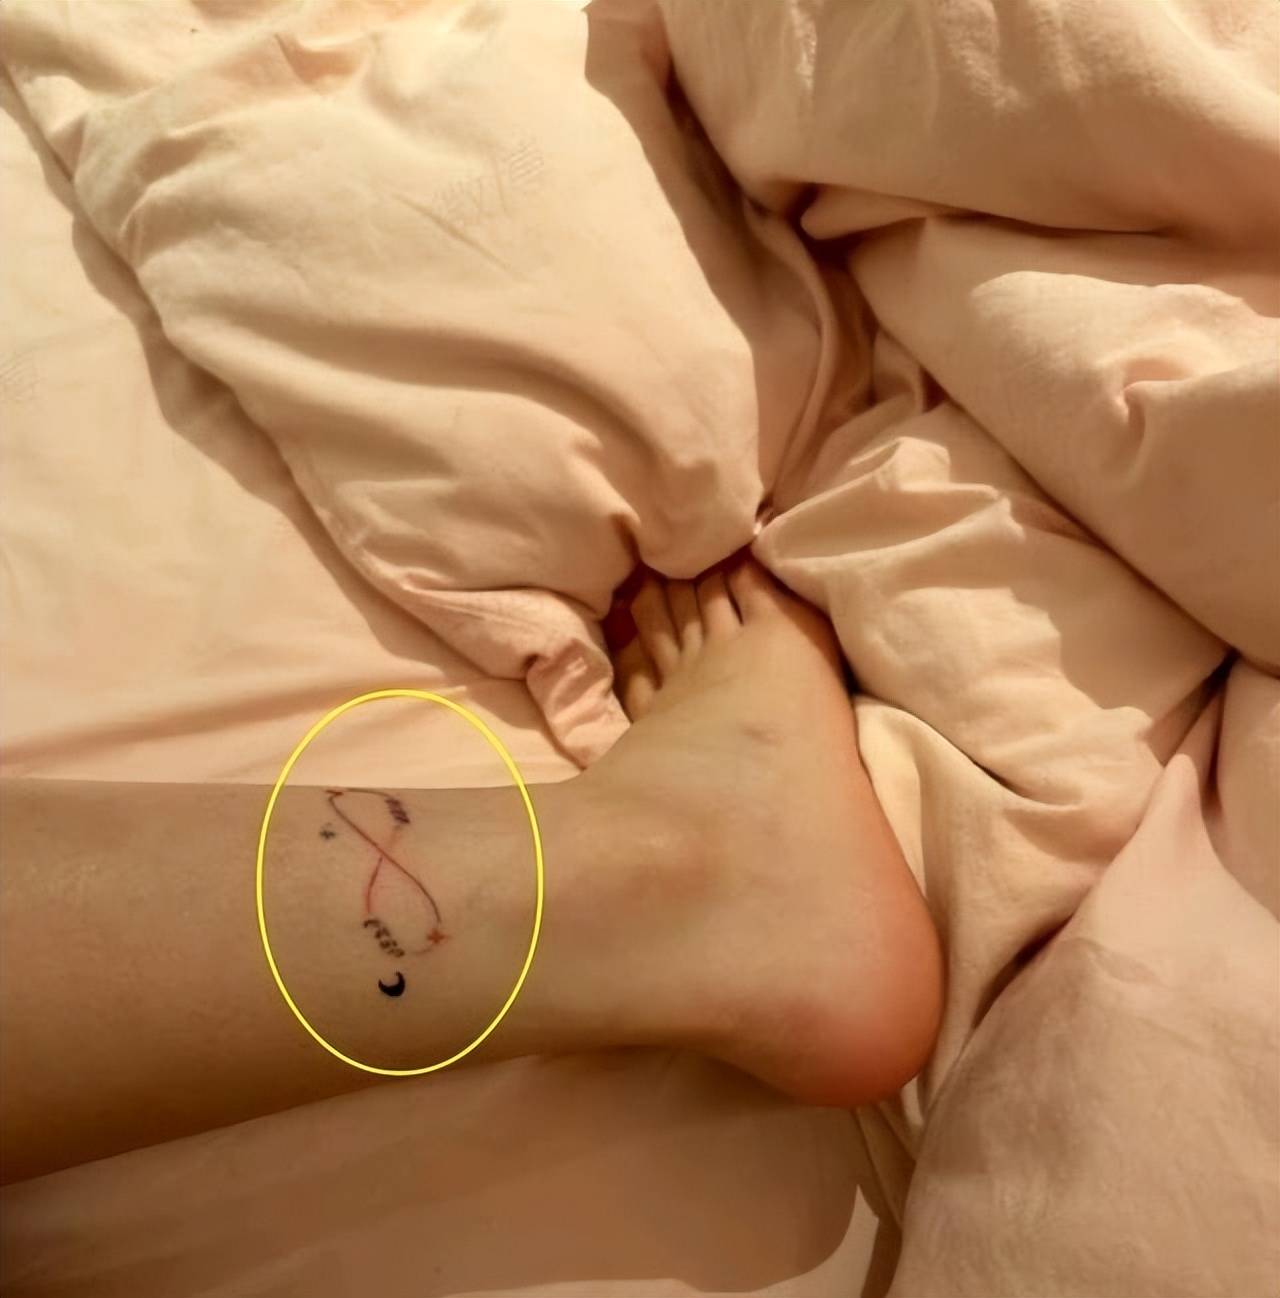 她的纹身在脚踝,胡文煊的纹身在肩膀处,看起来确实一模一样